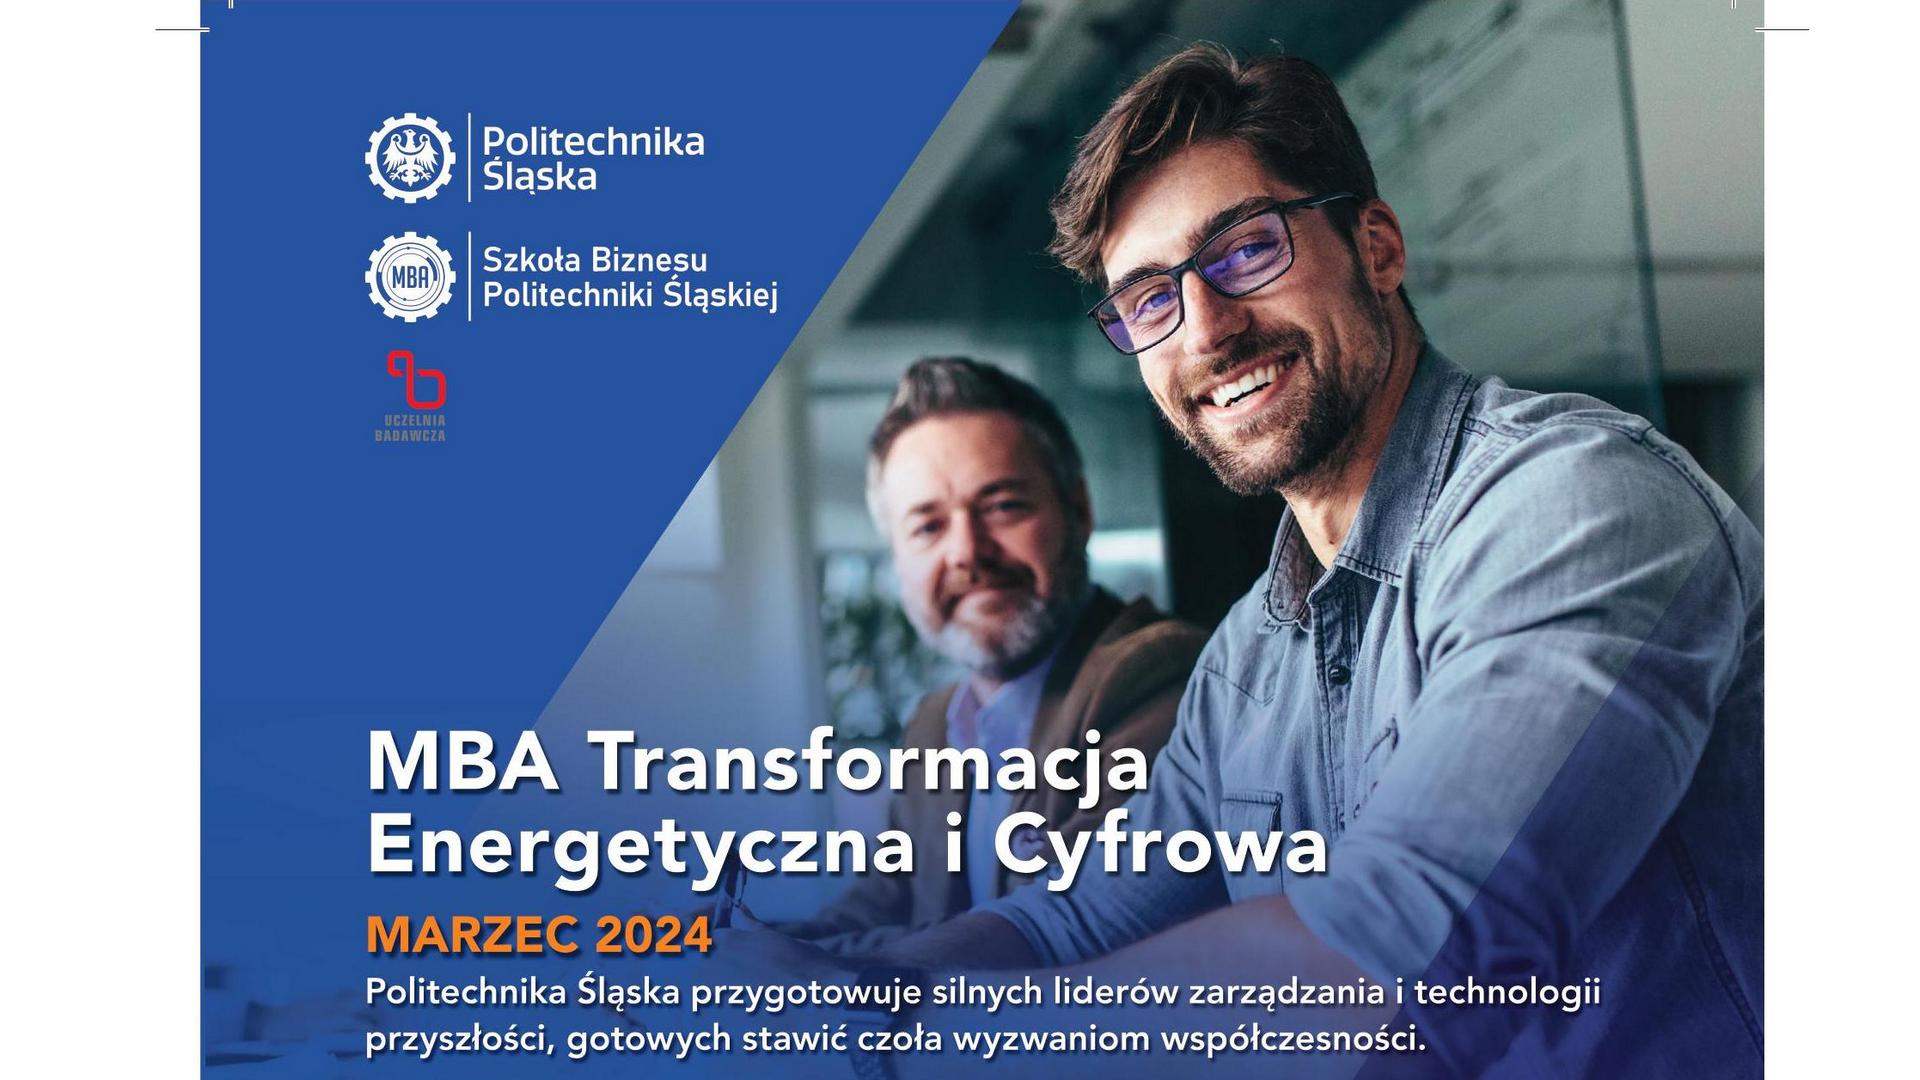 Trwa rekrutacja na studia MBA Transformacja Energetyczna i Cyfrowa na Politechnice Śląskiej w Gliwicach.